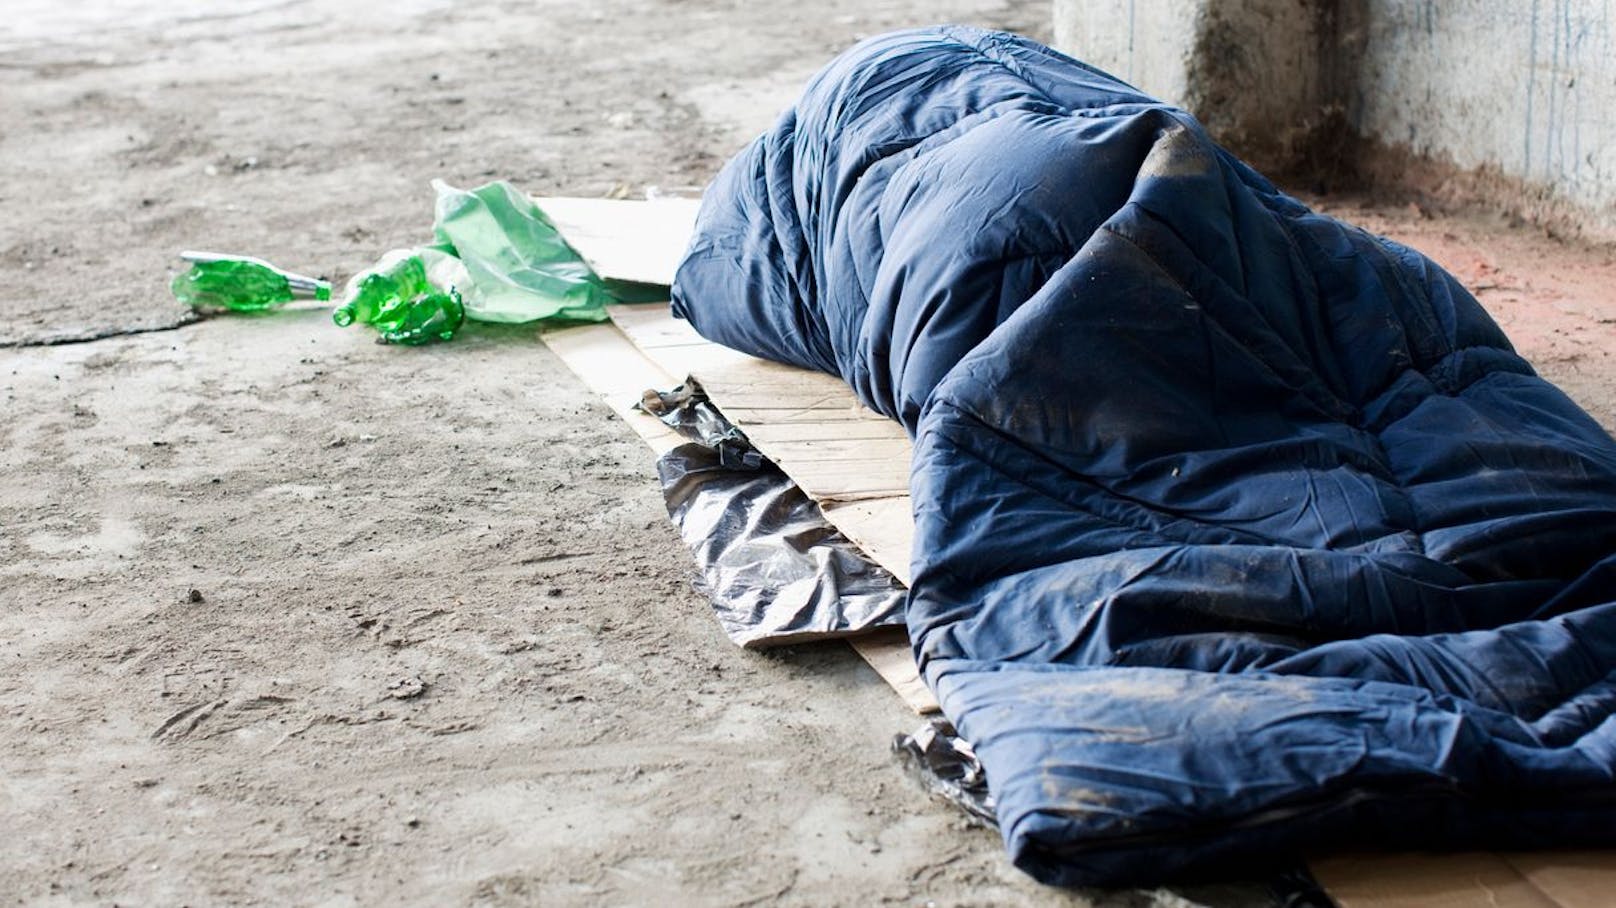 Obdachloser (30) in Stiegenhaus – dann eskaliert alles